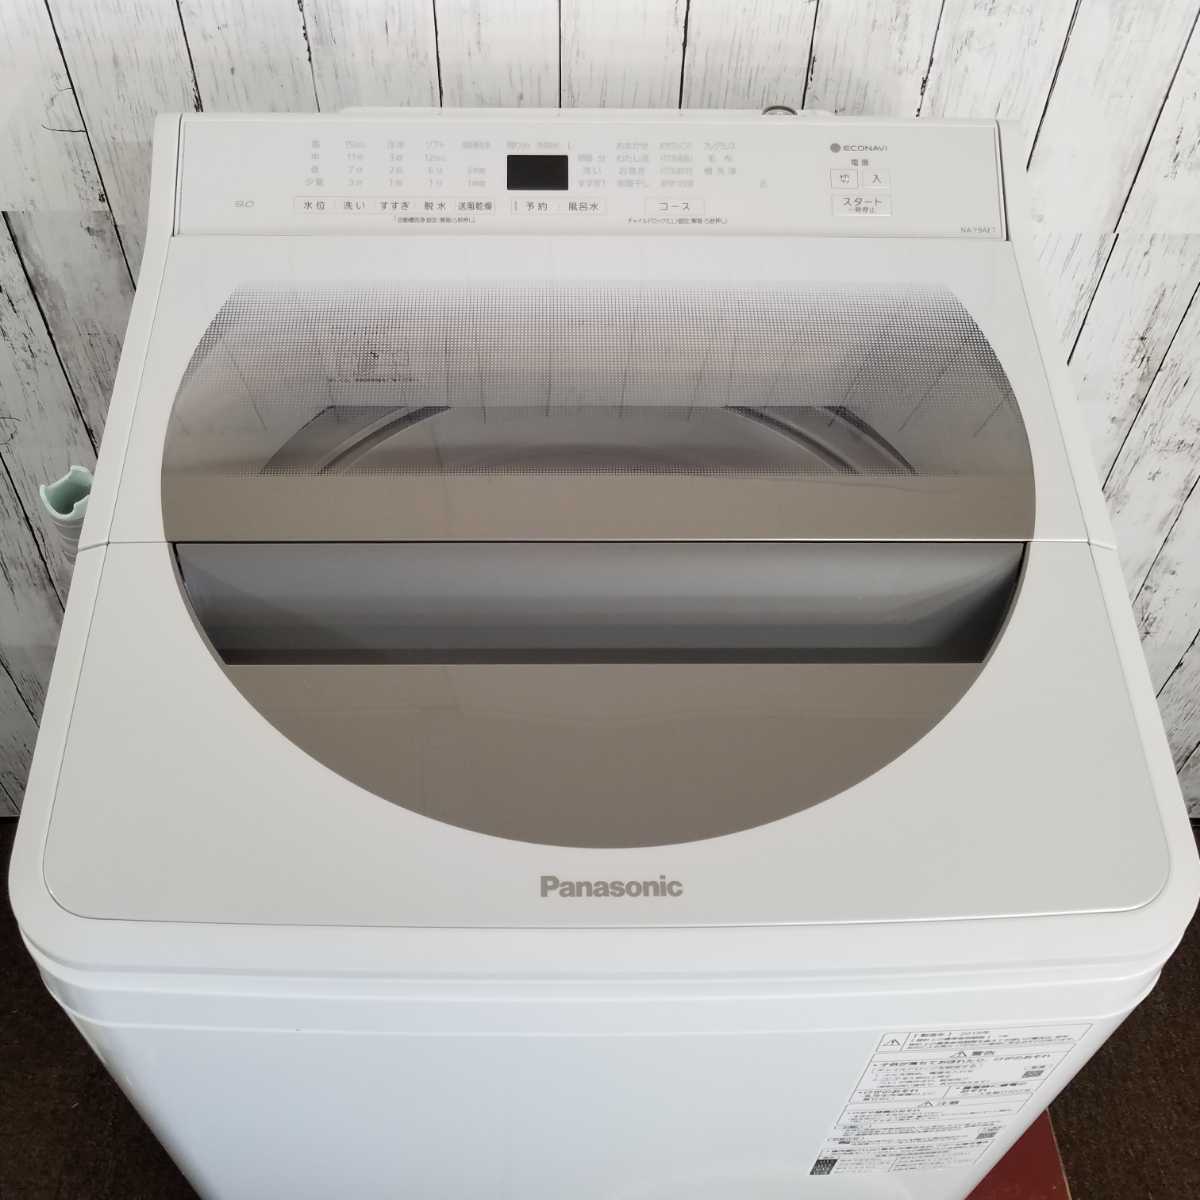 新作人気モデル Panasonic パナソニック 洗濯機 9kg 泡洗浄 